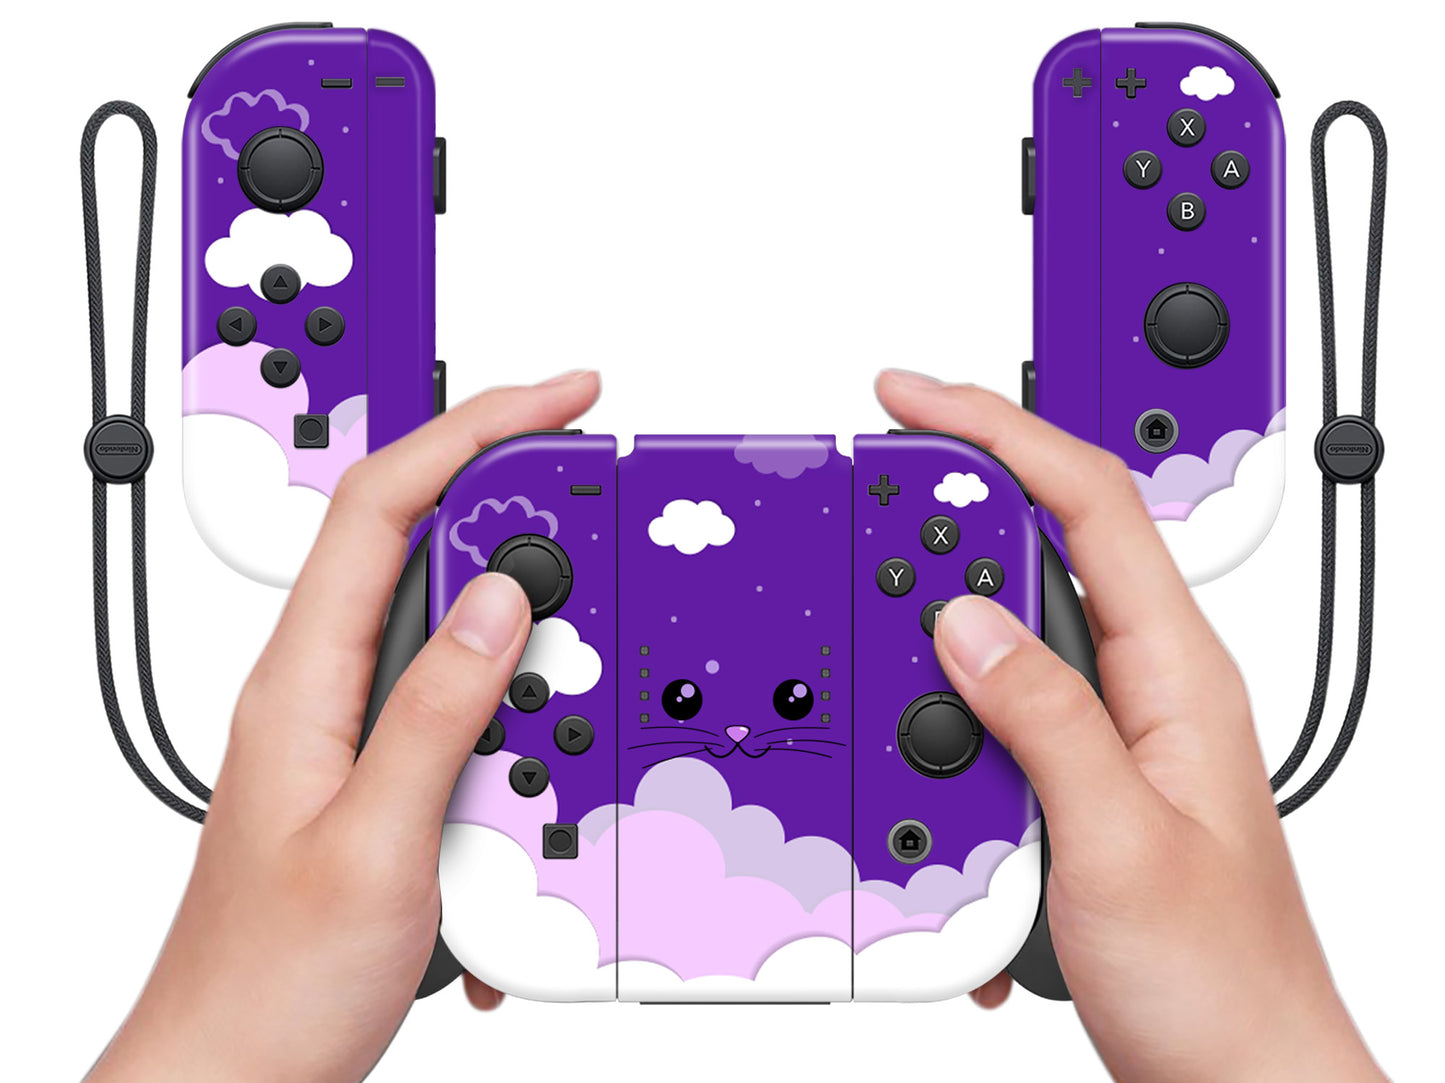 Cute Kittens Purple Sky Clouds Full Wrap Vinyl Skin for Nintendo Switch